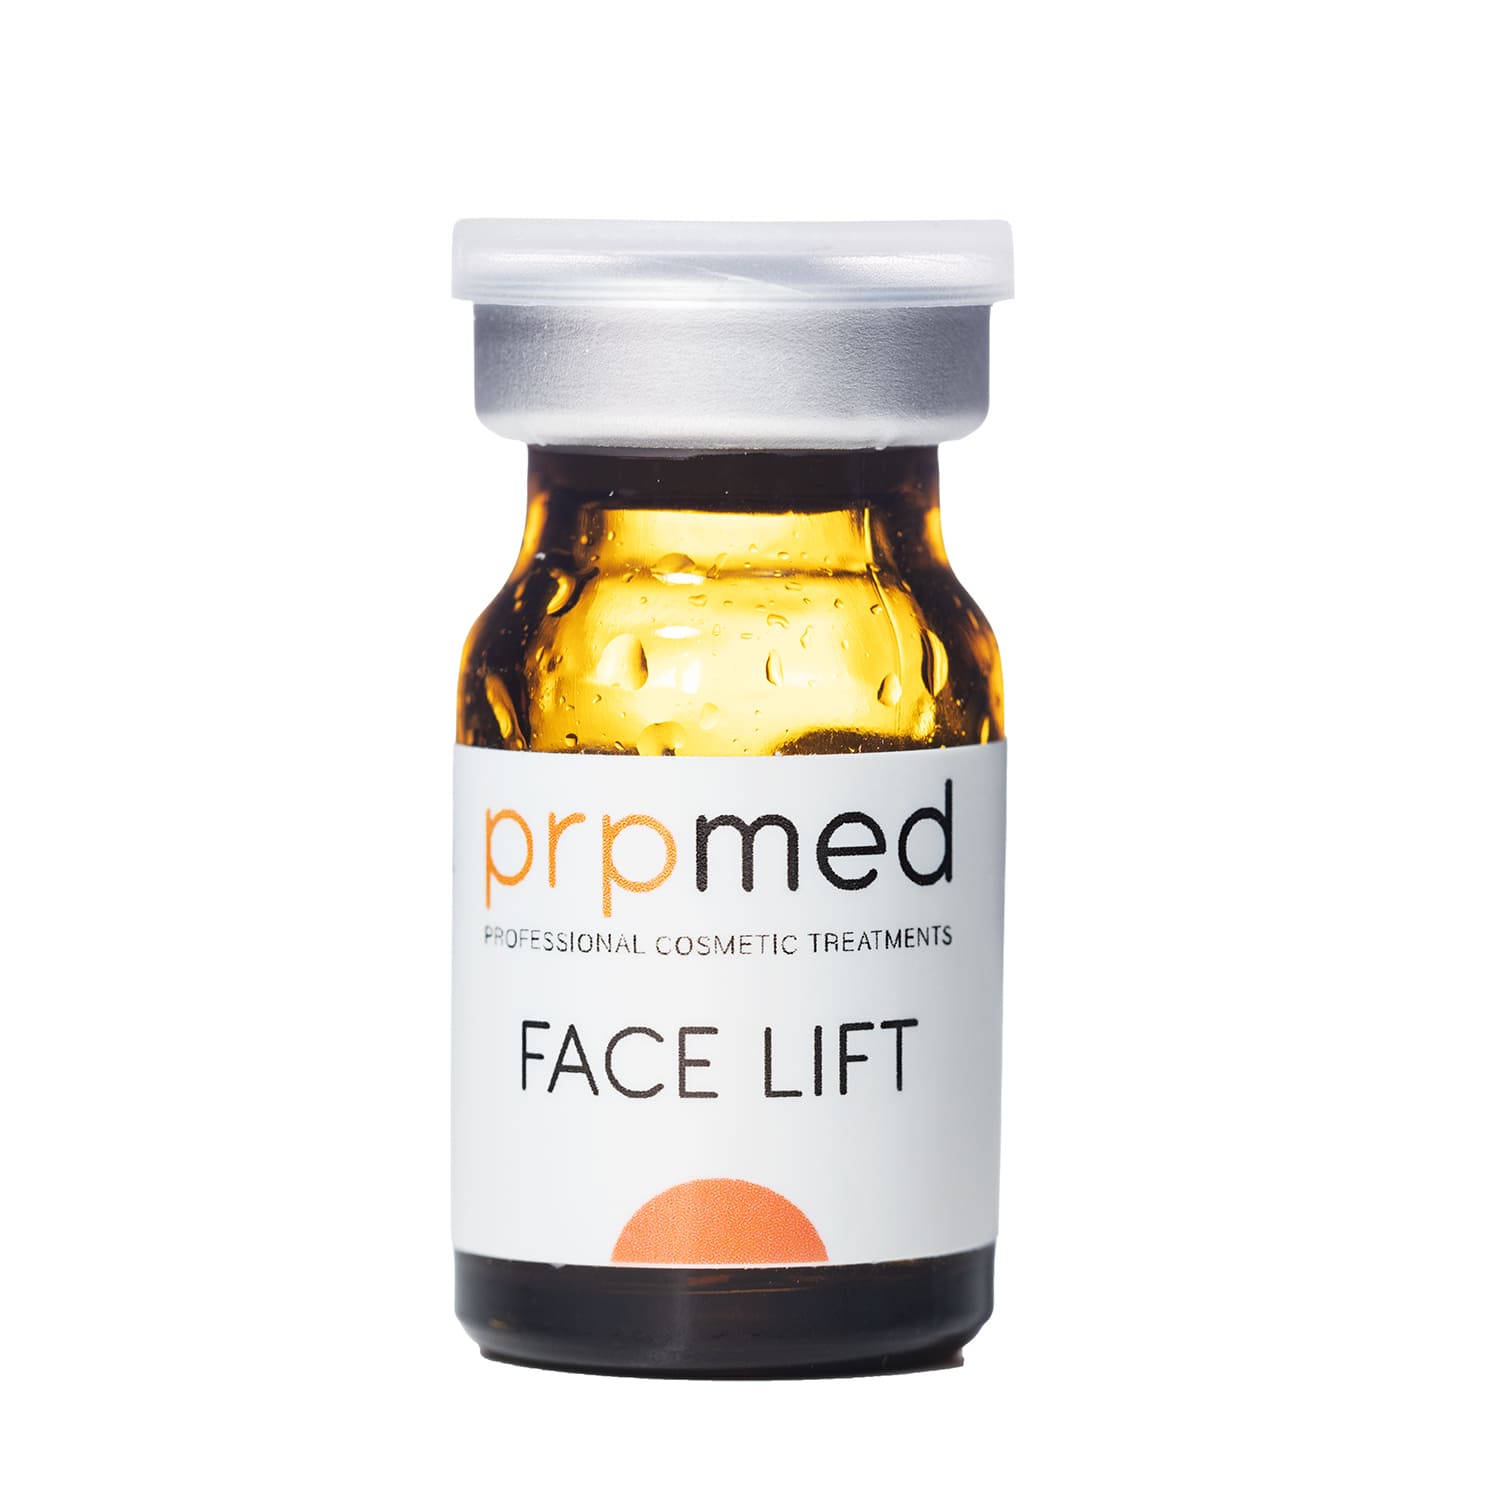 Serul de lifting facial Microneedling de Prpmed Professional Cosmetic Treatments